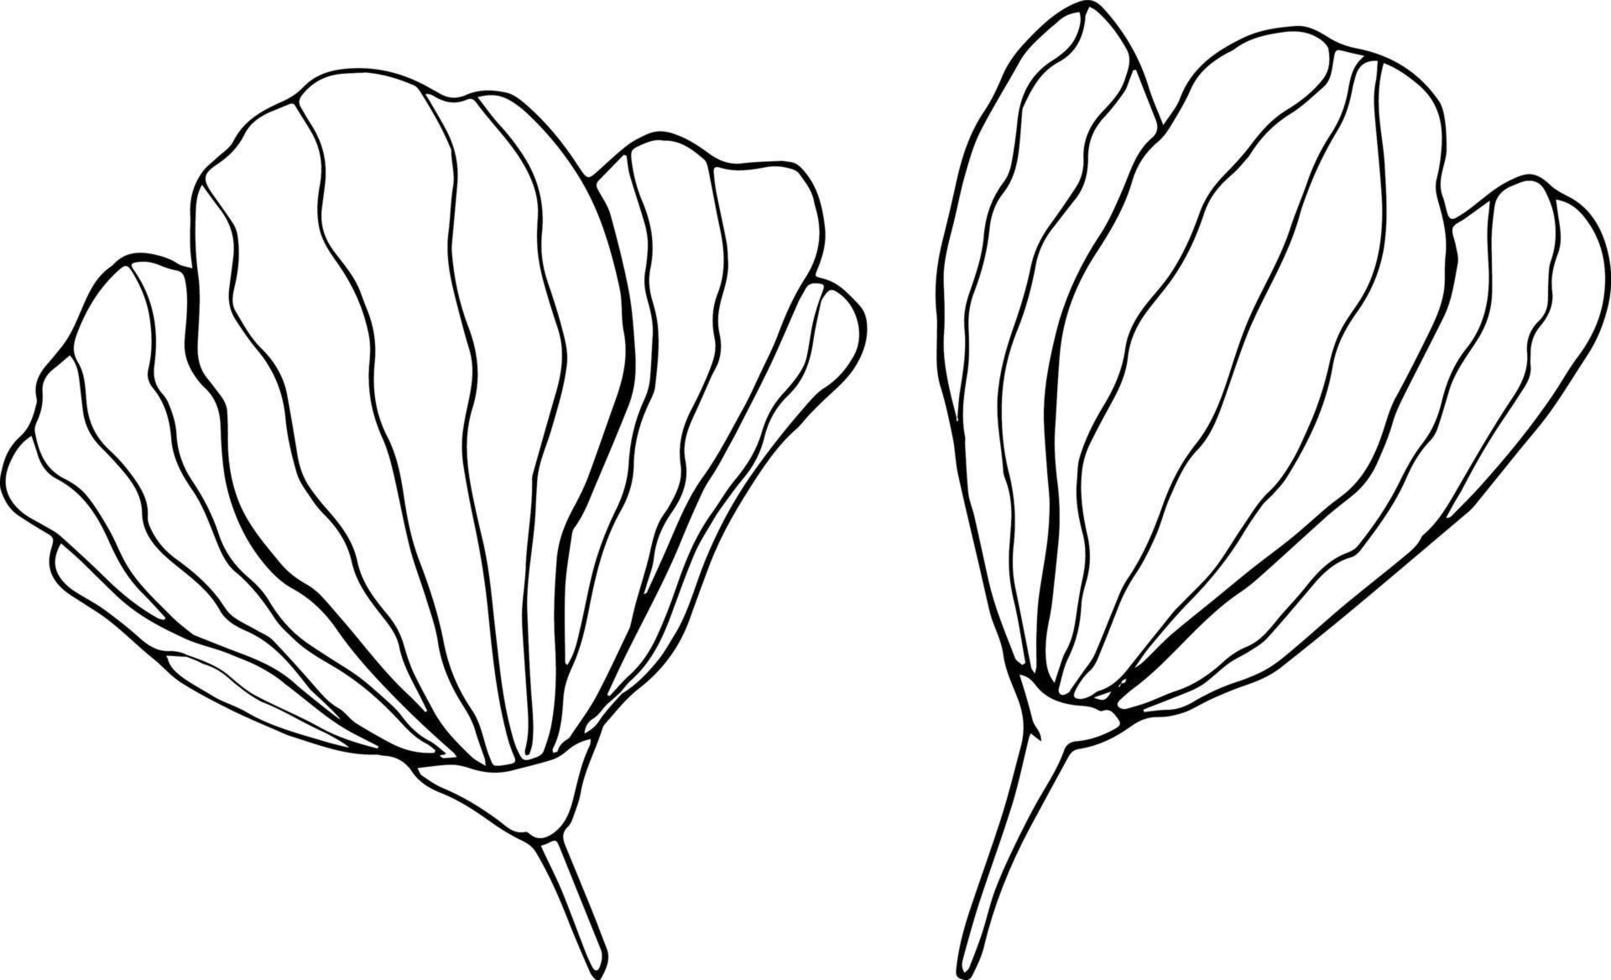 deux fleurs dessinées à la main sur fond blanc. dessin floral de contour d'une ligne. illustration vectorielle vecteur